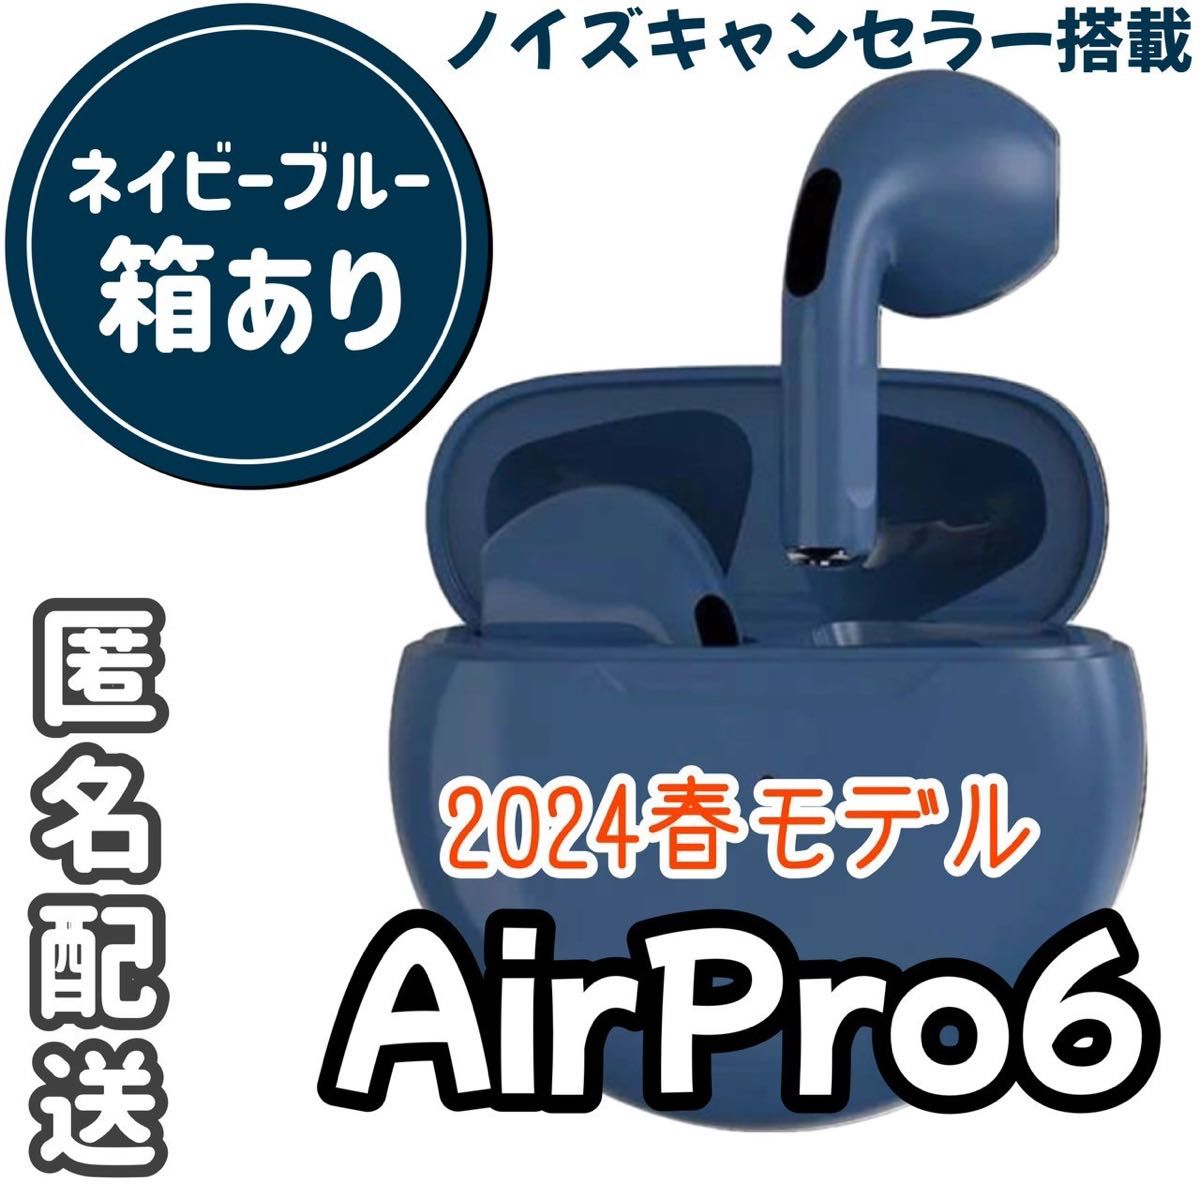 ☆最強コスパ☆最新AirPro6 Bluetoothワイヤレスイヤホン《ネイビーブルー》箱付き